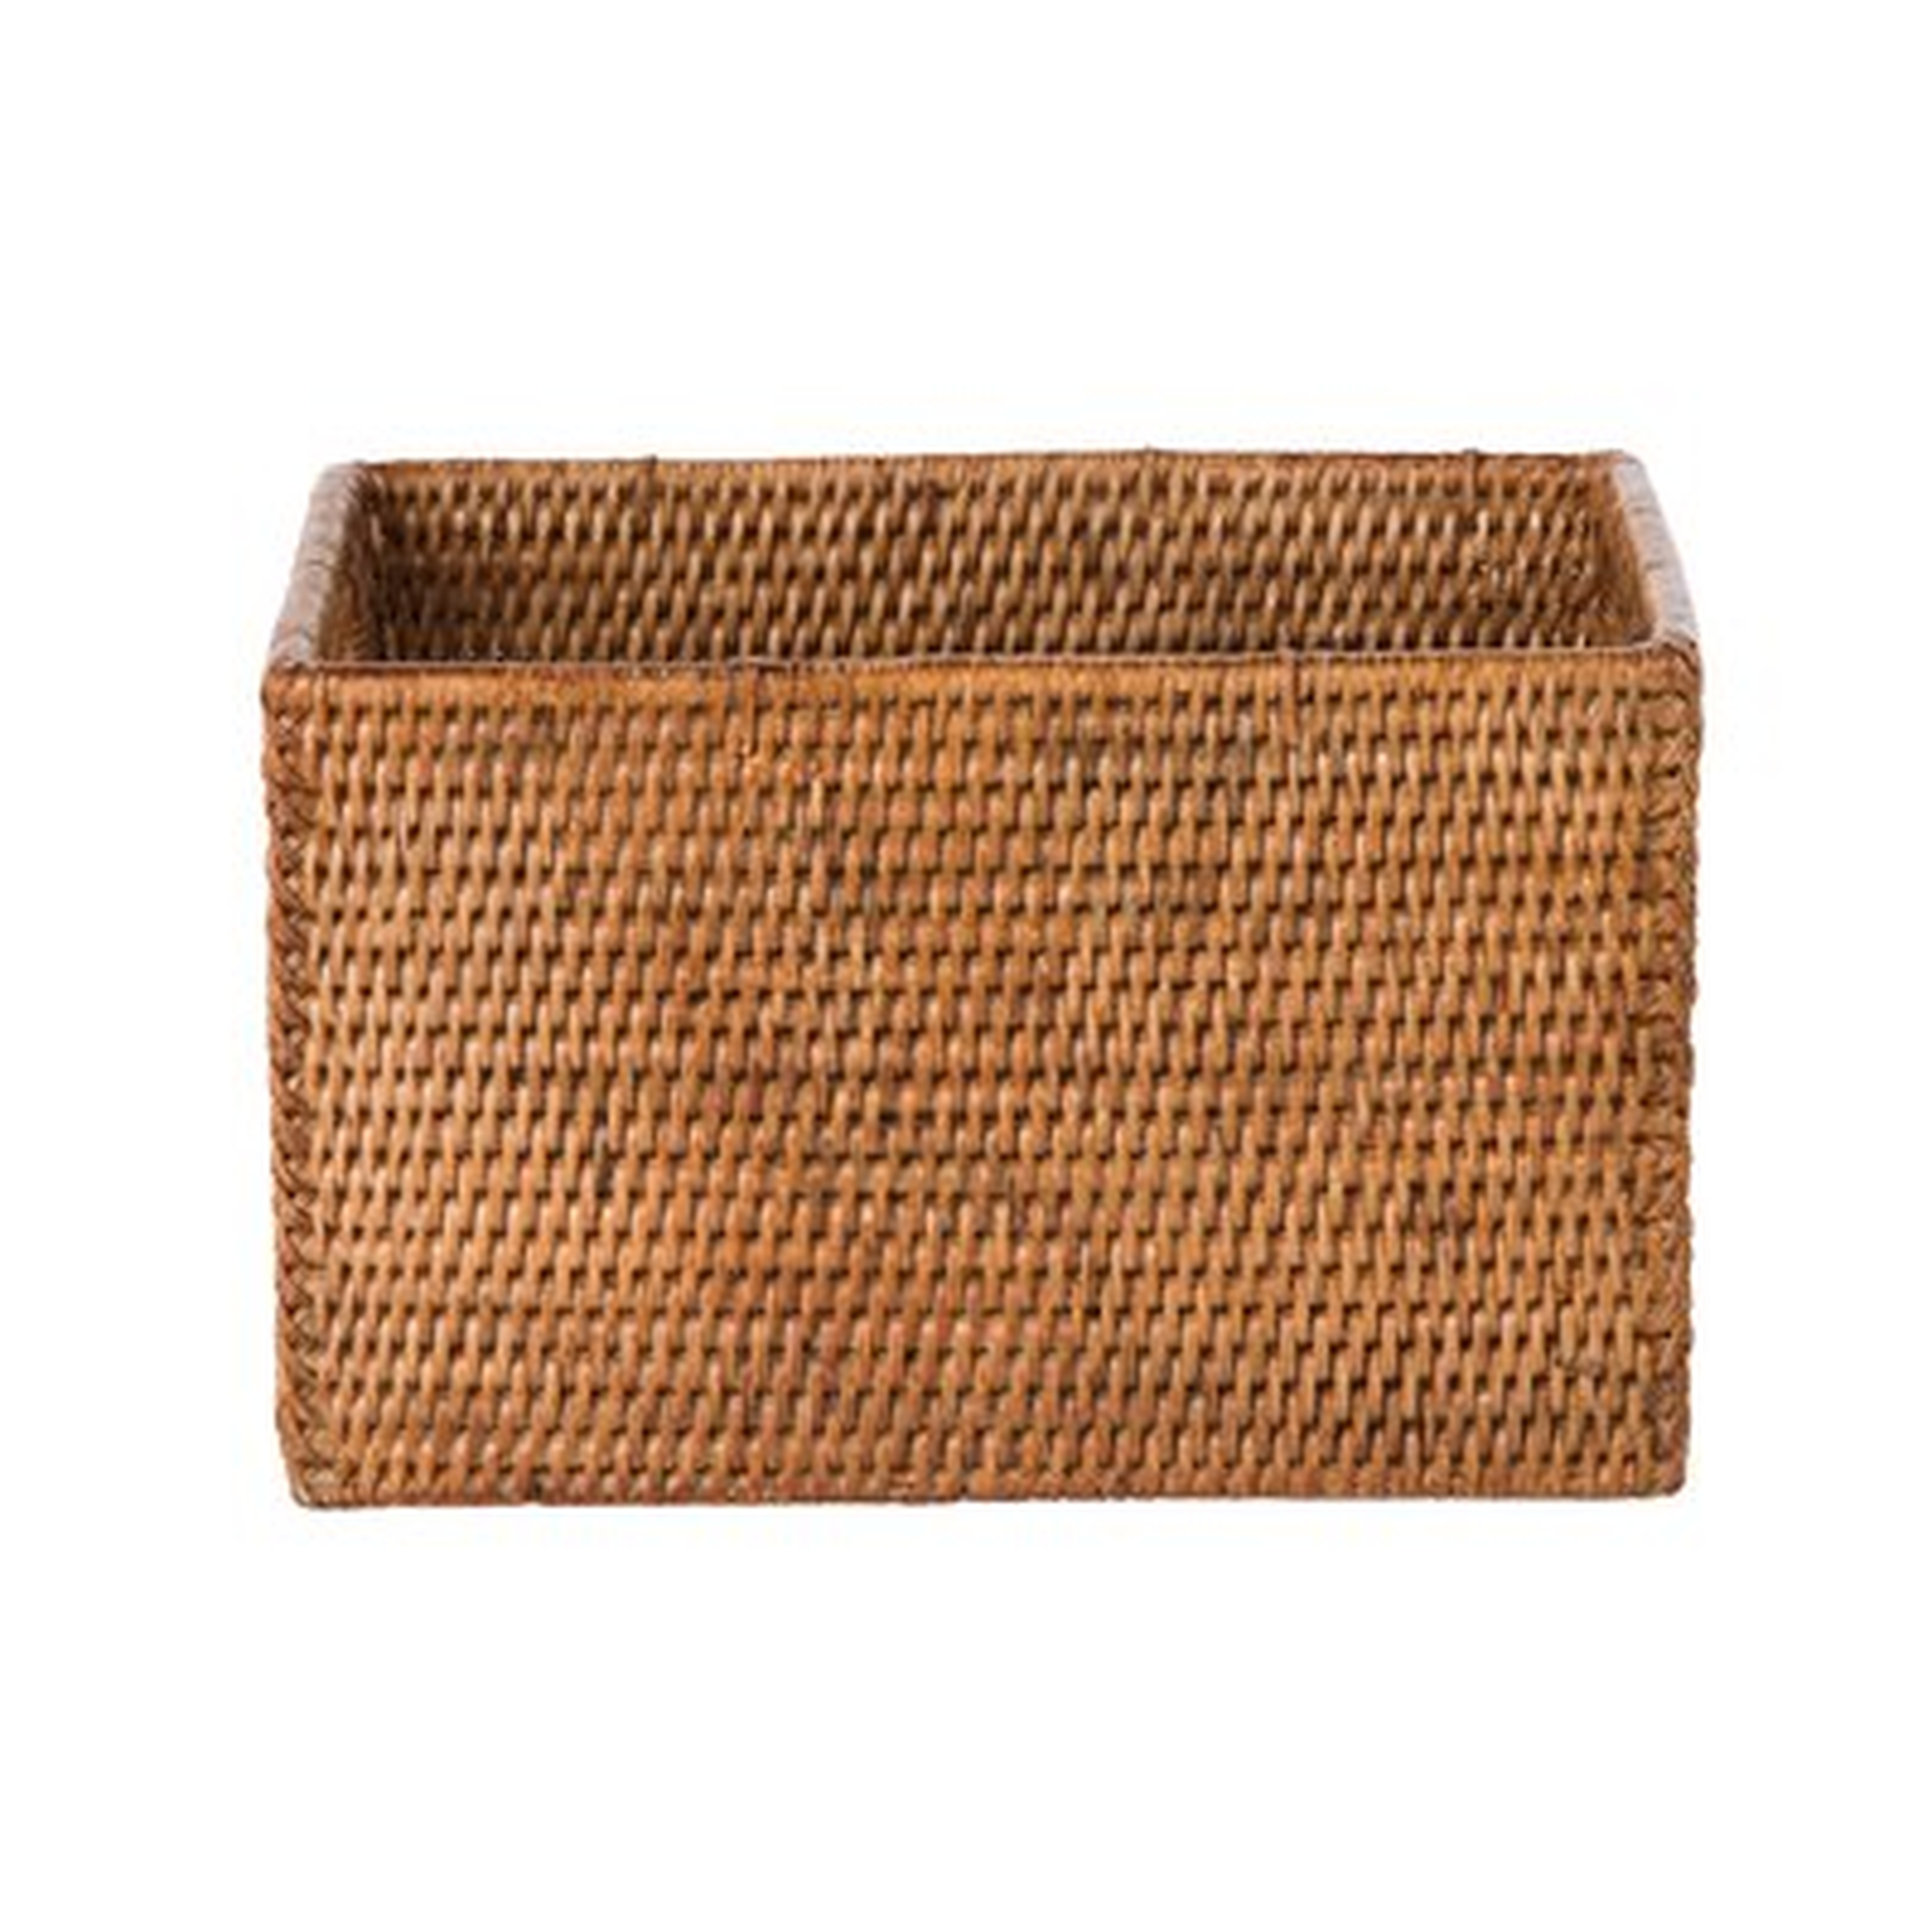 Shelf Rattan Basket - Wayfair